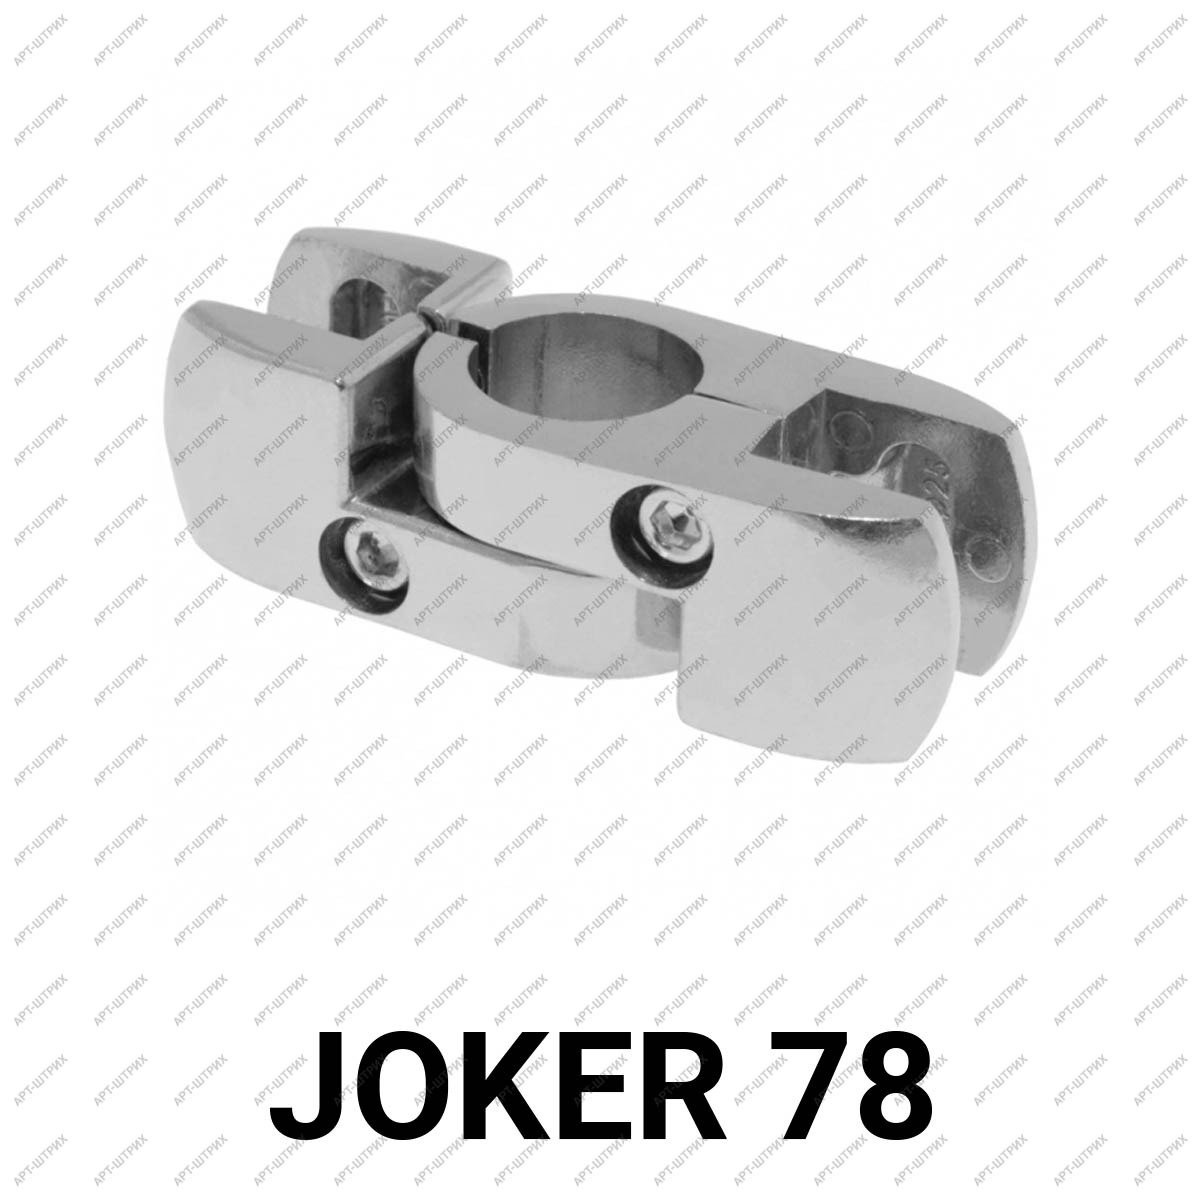 Joker 78 Крепеж вращательный для ДСП или стекла